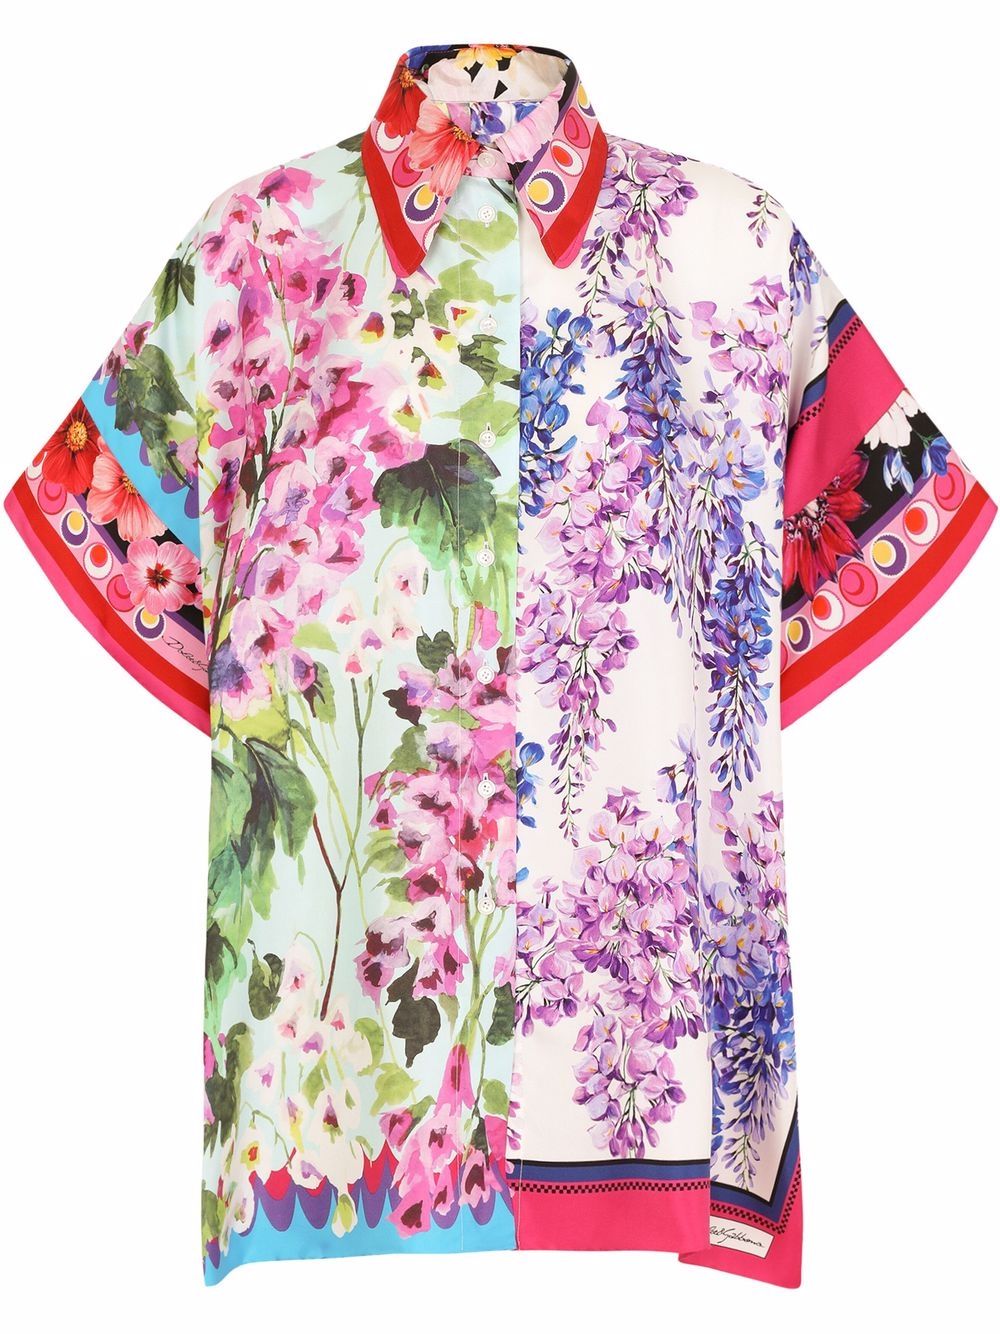 фото Dolce & gabbana шелковая рубашка с цветочным принтом